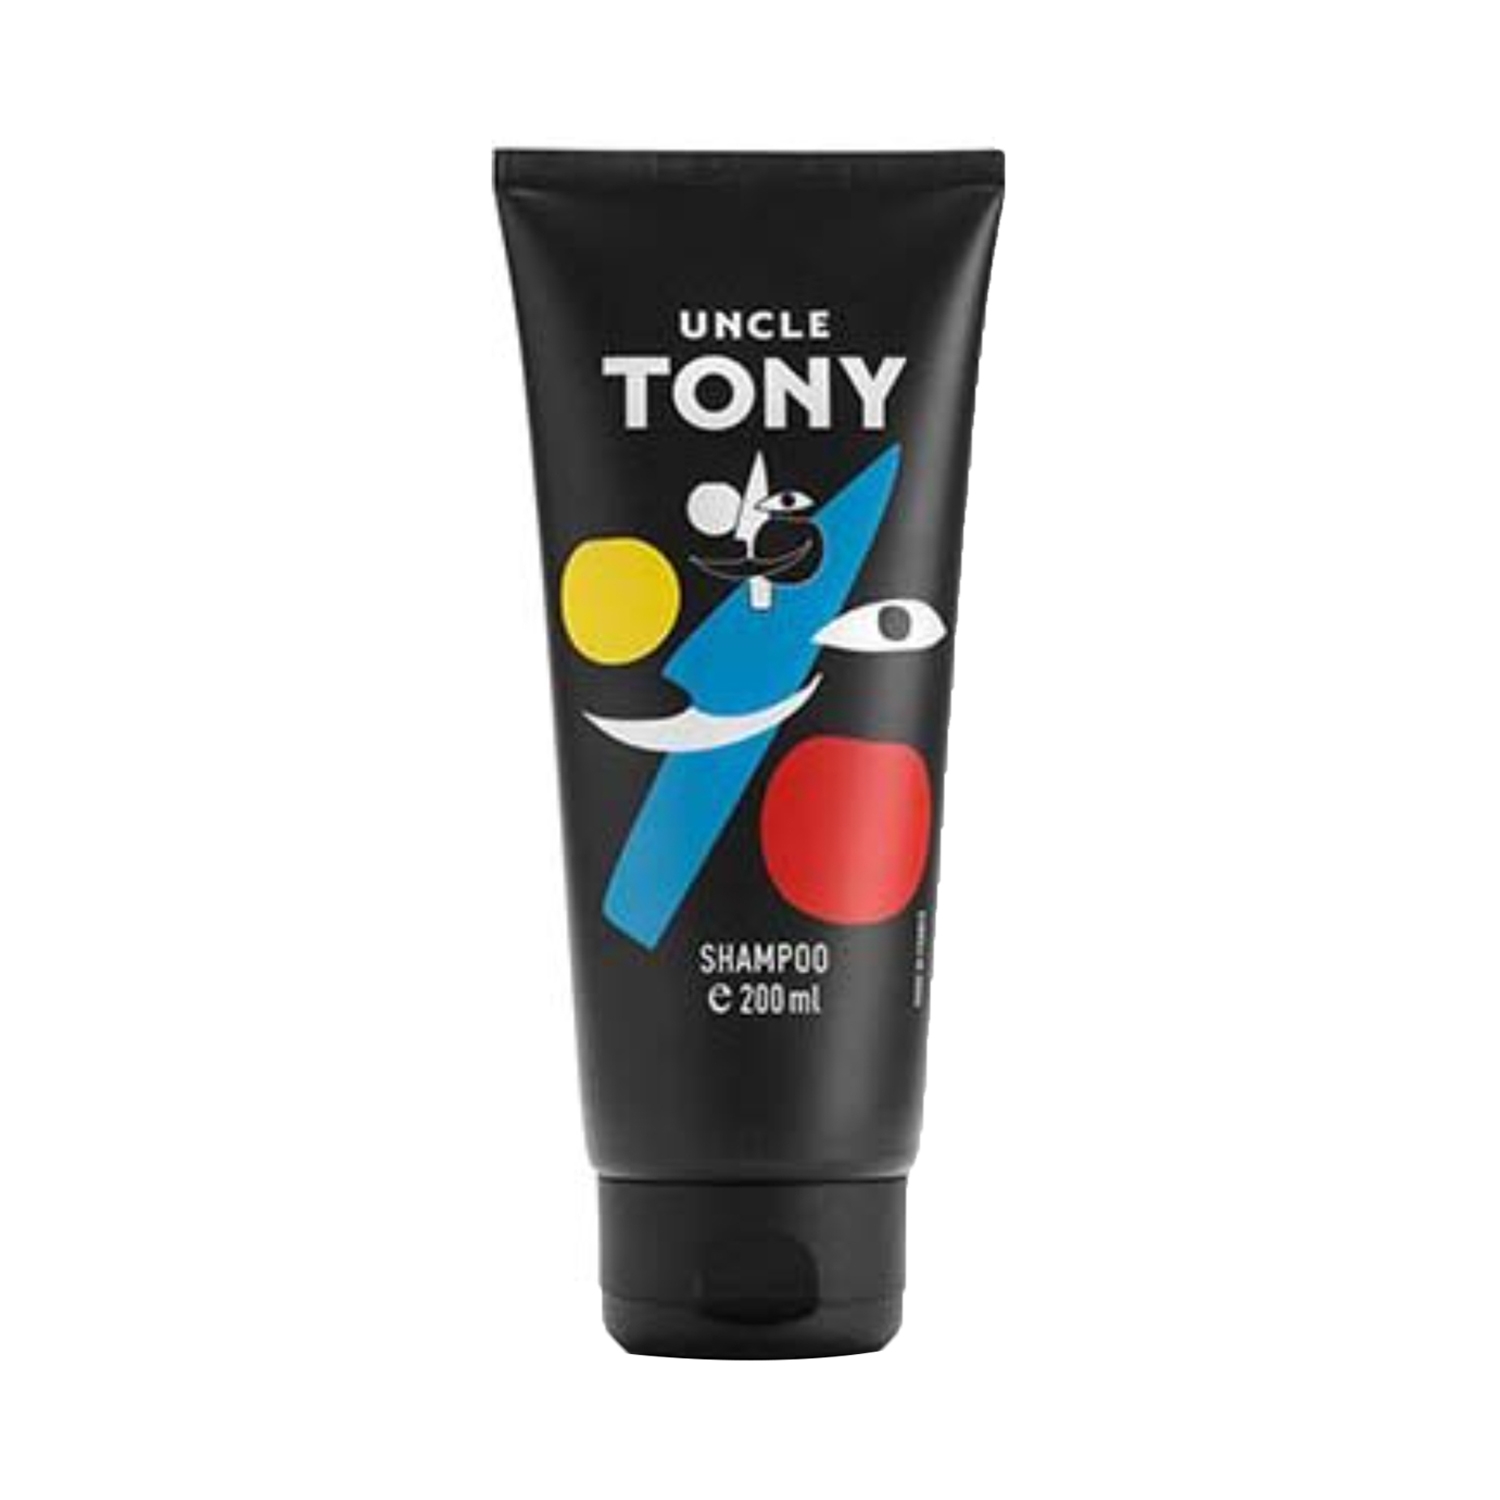 Uncle Tony | Uncle Tony Hair Shampoo (200ml)